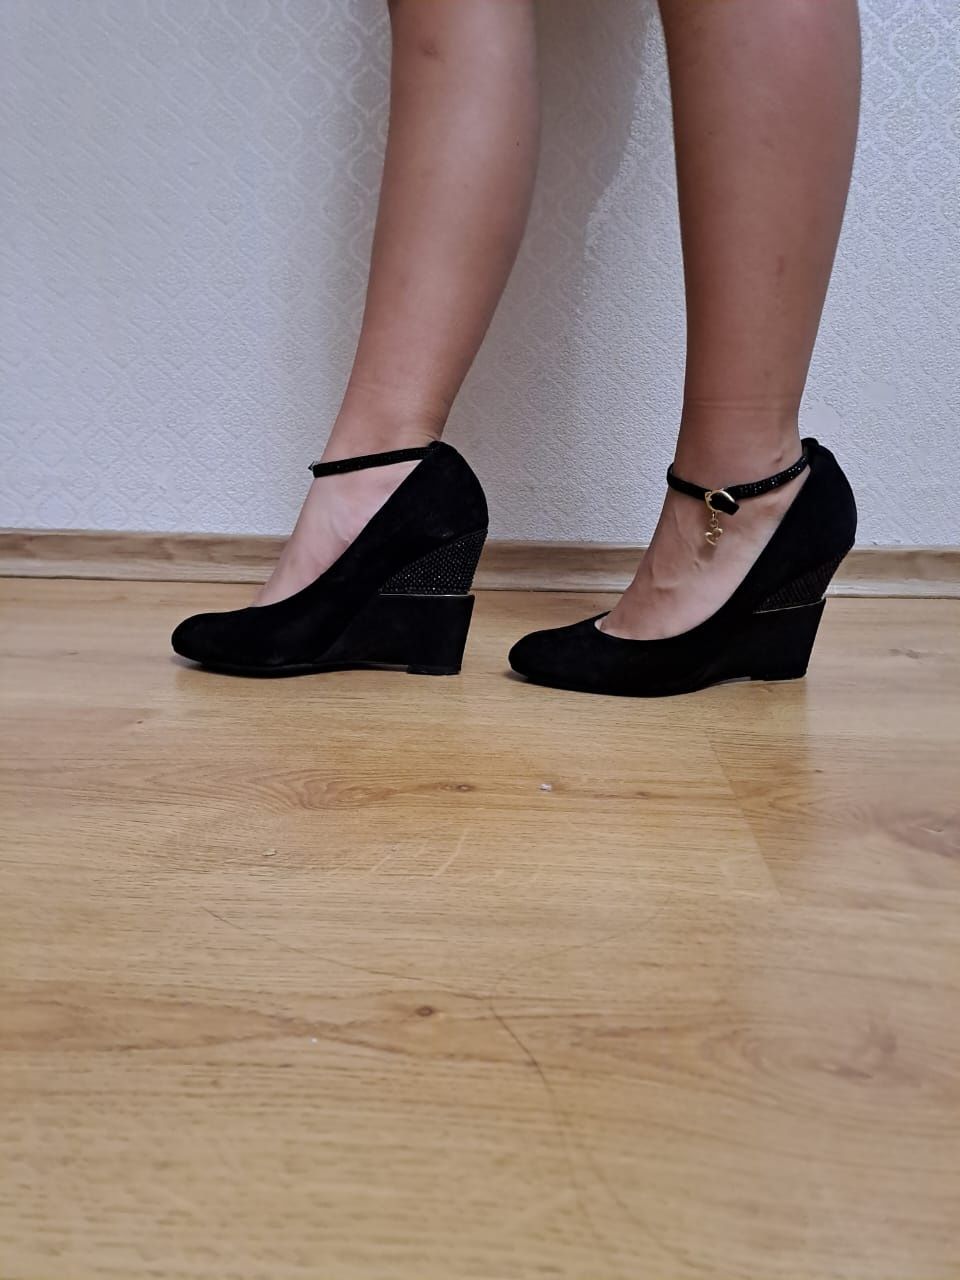 Женская обувь, туфли